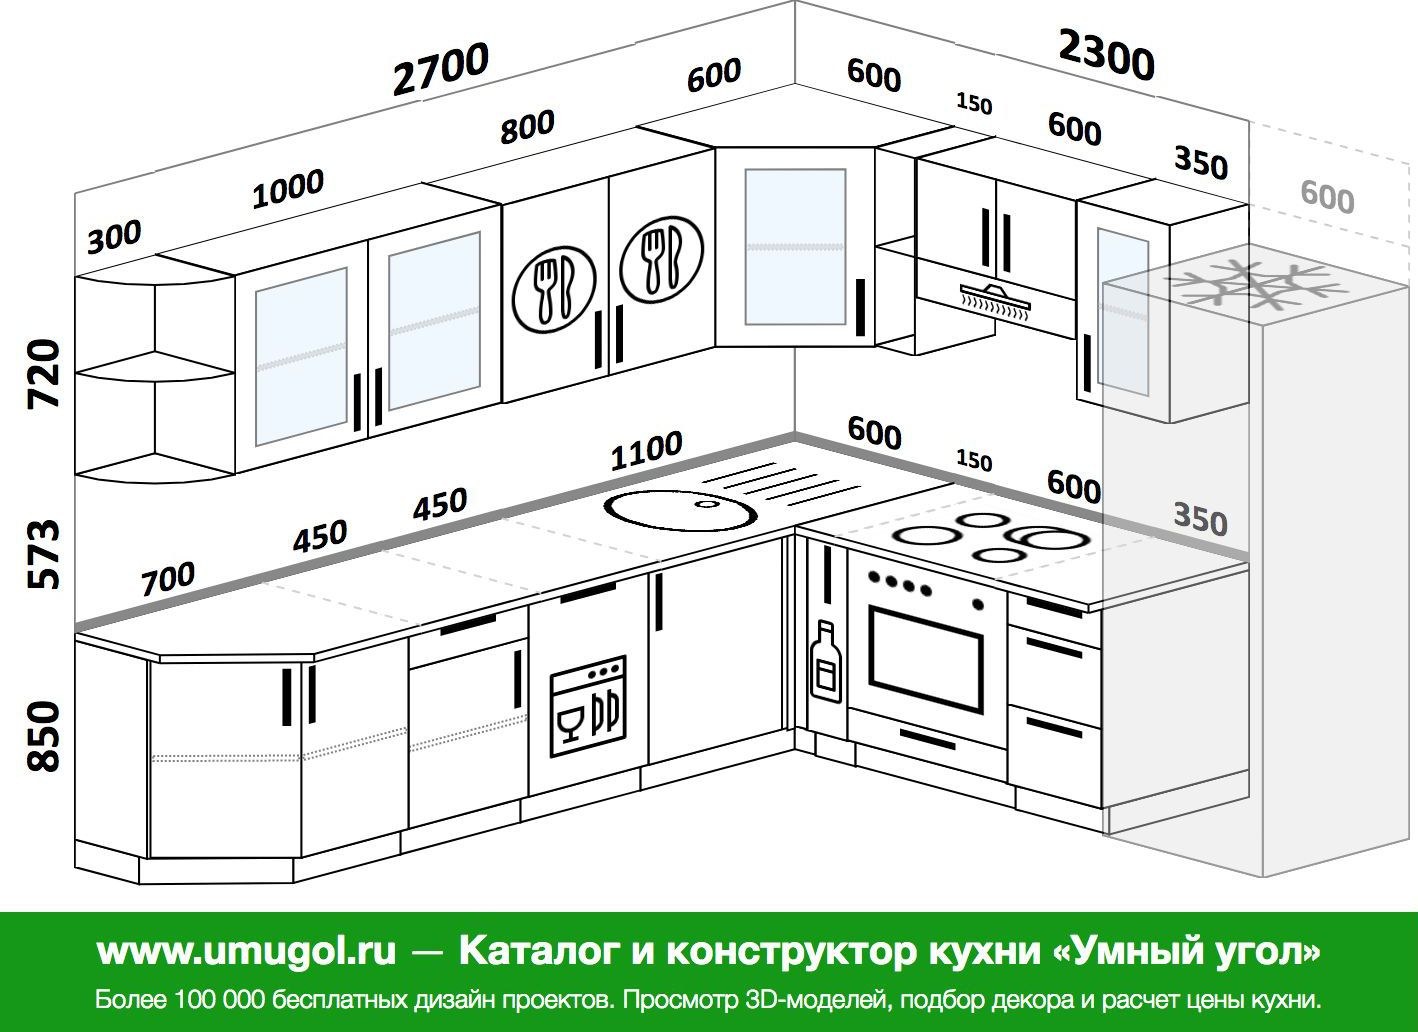 высота кухонного гарнитура от пола со столешницей стандарт